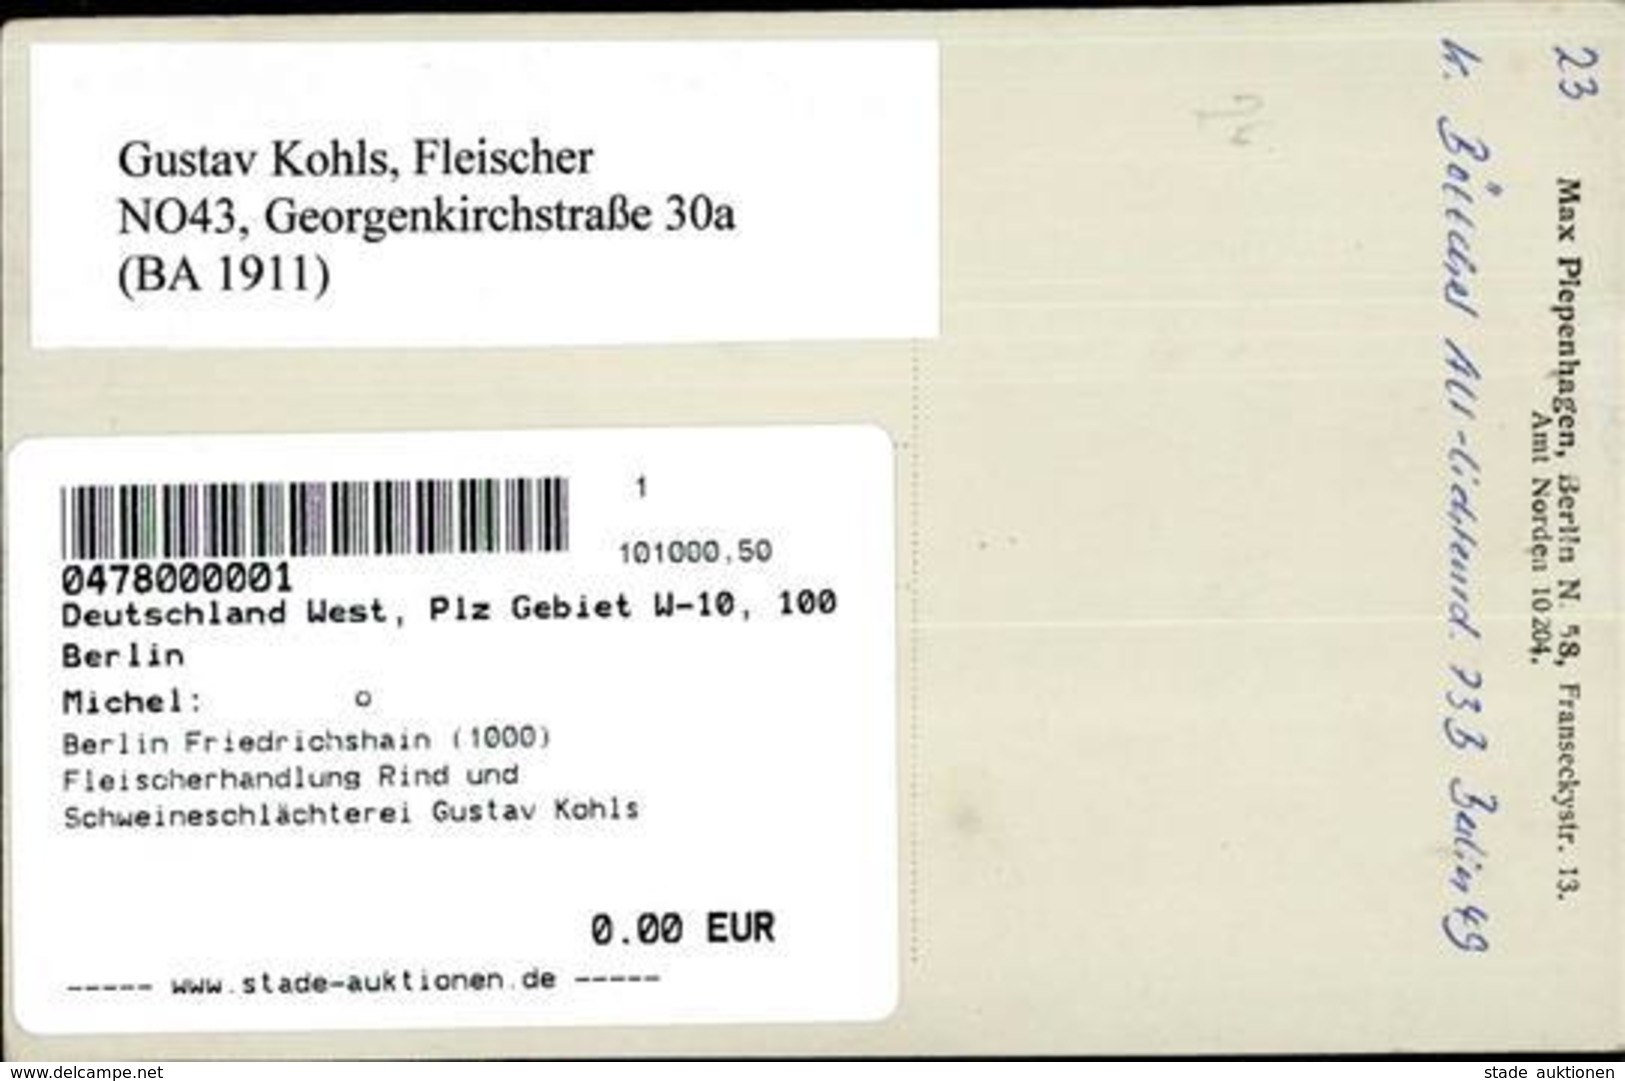 Berlin Friedrichshain (1000) Fleischerhandlung Rind Und Schweineschlächterei Gustav Kohls Georgenkirchstrasse 30a Foto-A - Guerre 1914-18